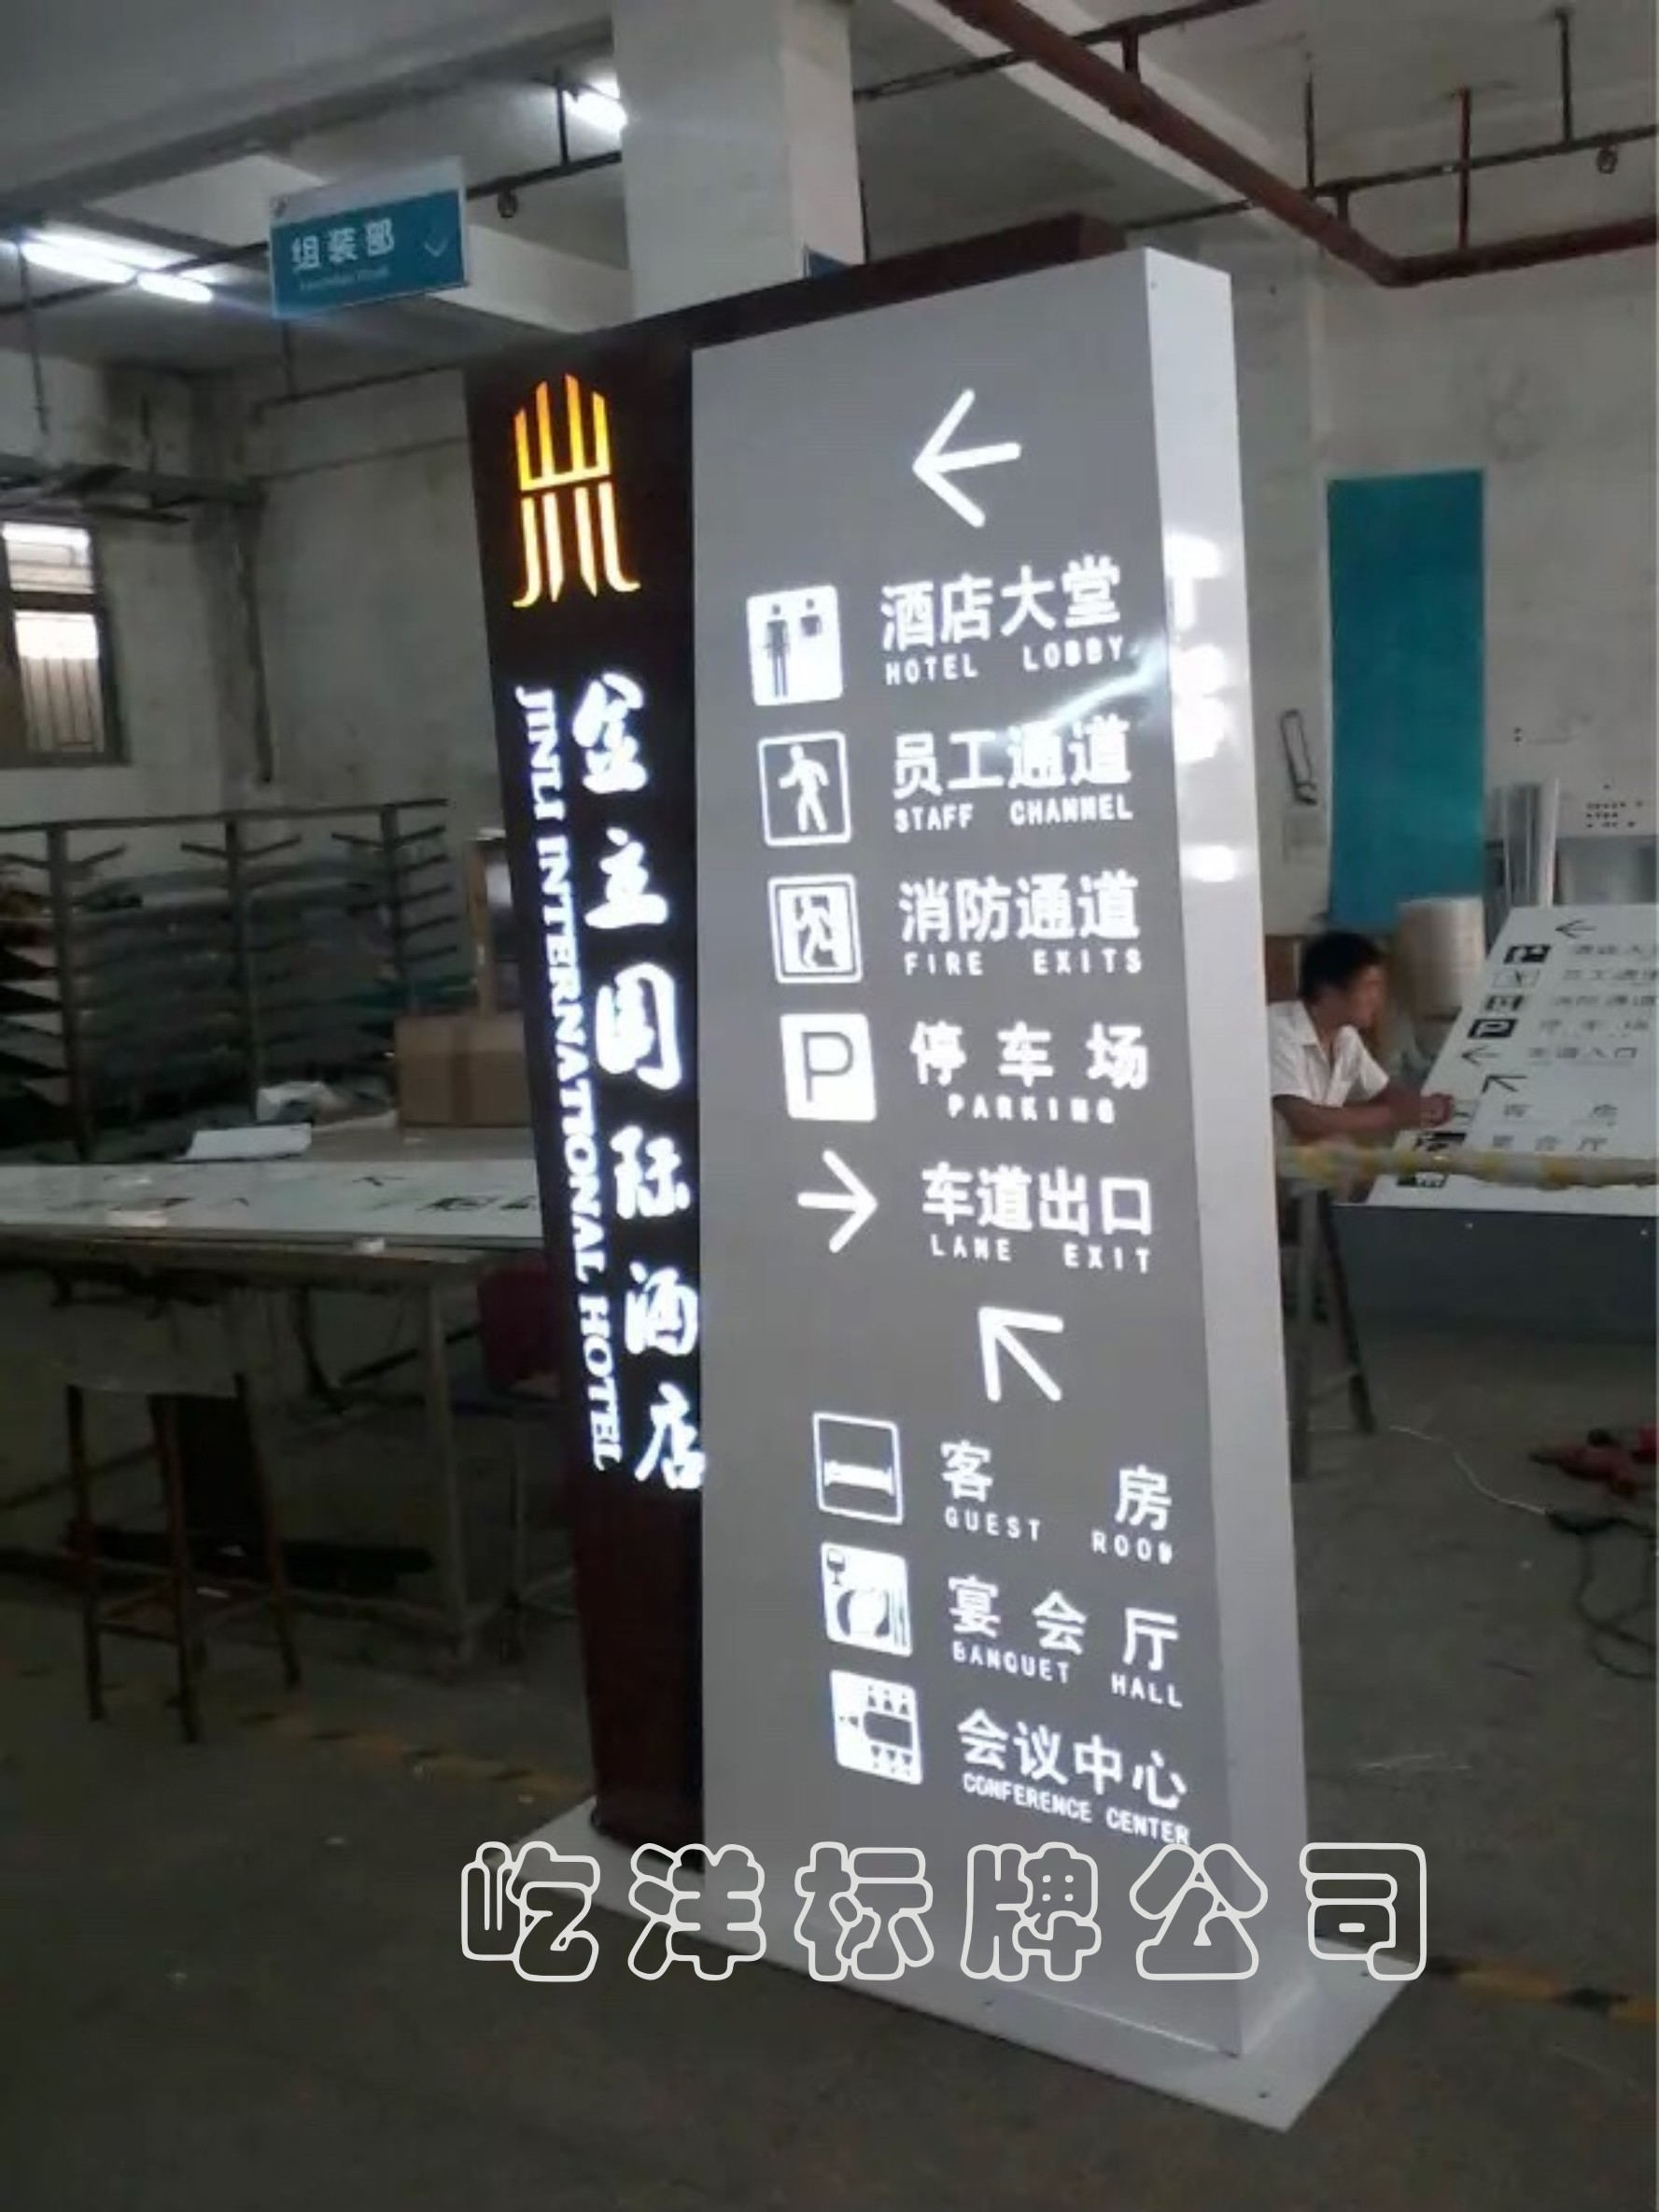 惠州市酒店标识系统 标识标牌设计厂家酒店标识系统 标识标牌设计制作